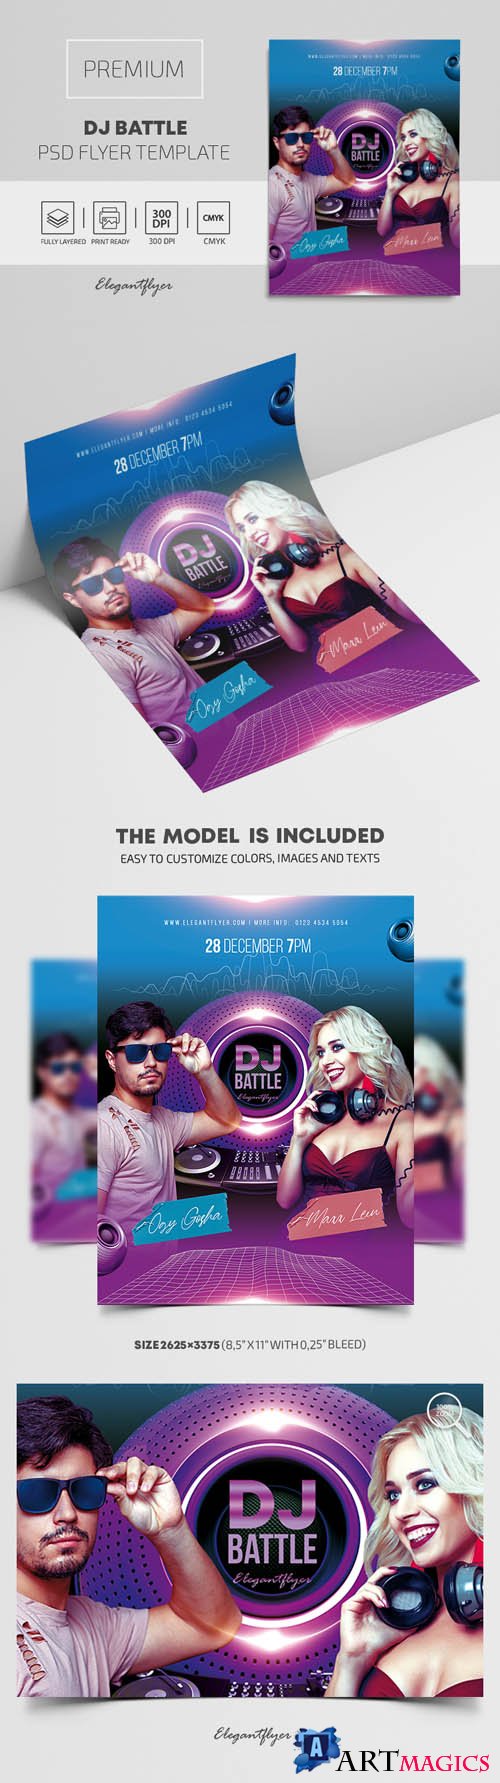 DJ Battle Premium PSD Flyer Template